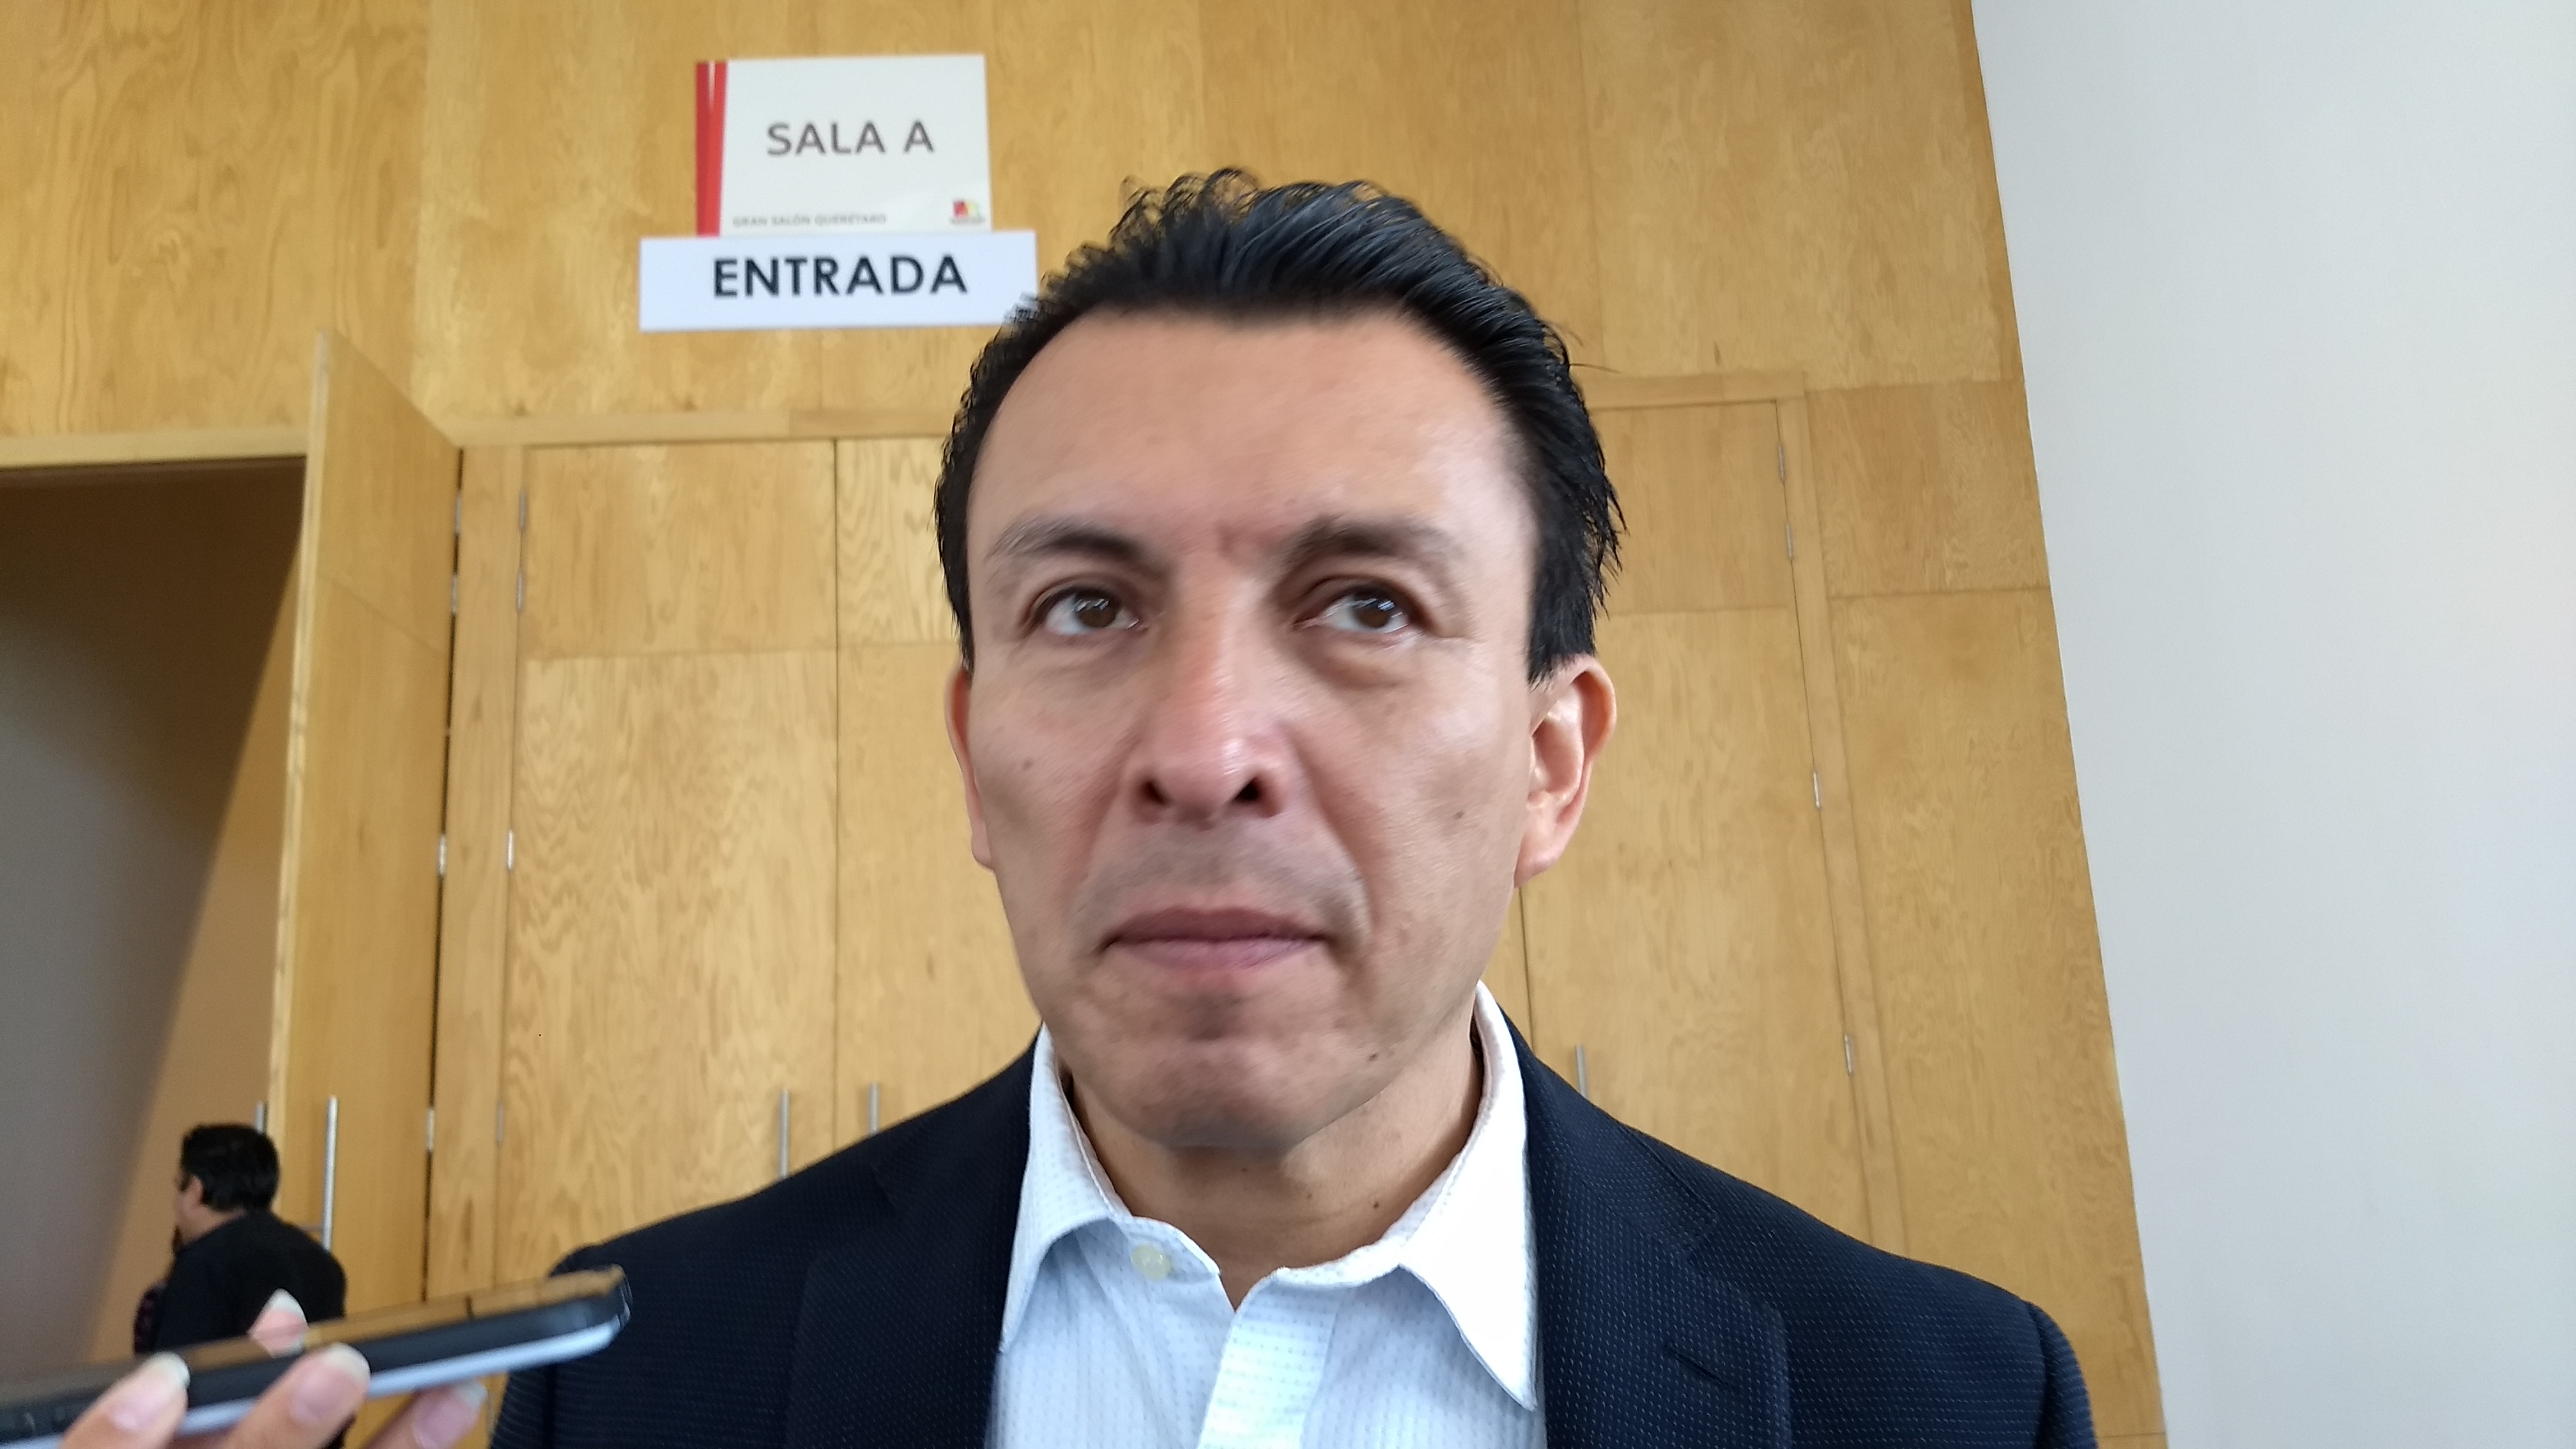  Candidato en Querétaro solicita seguridad por supuestas amenazas